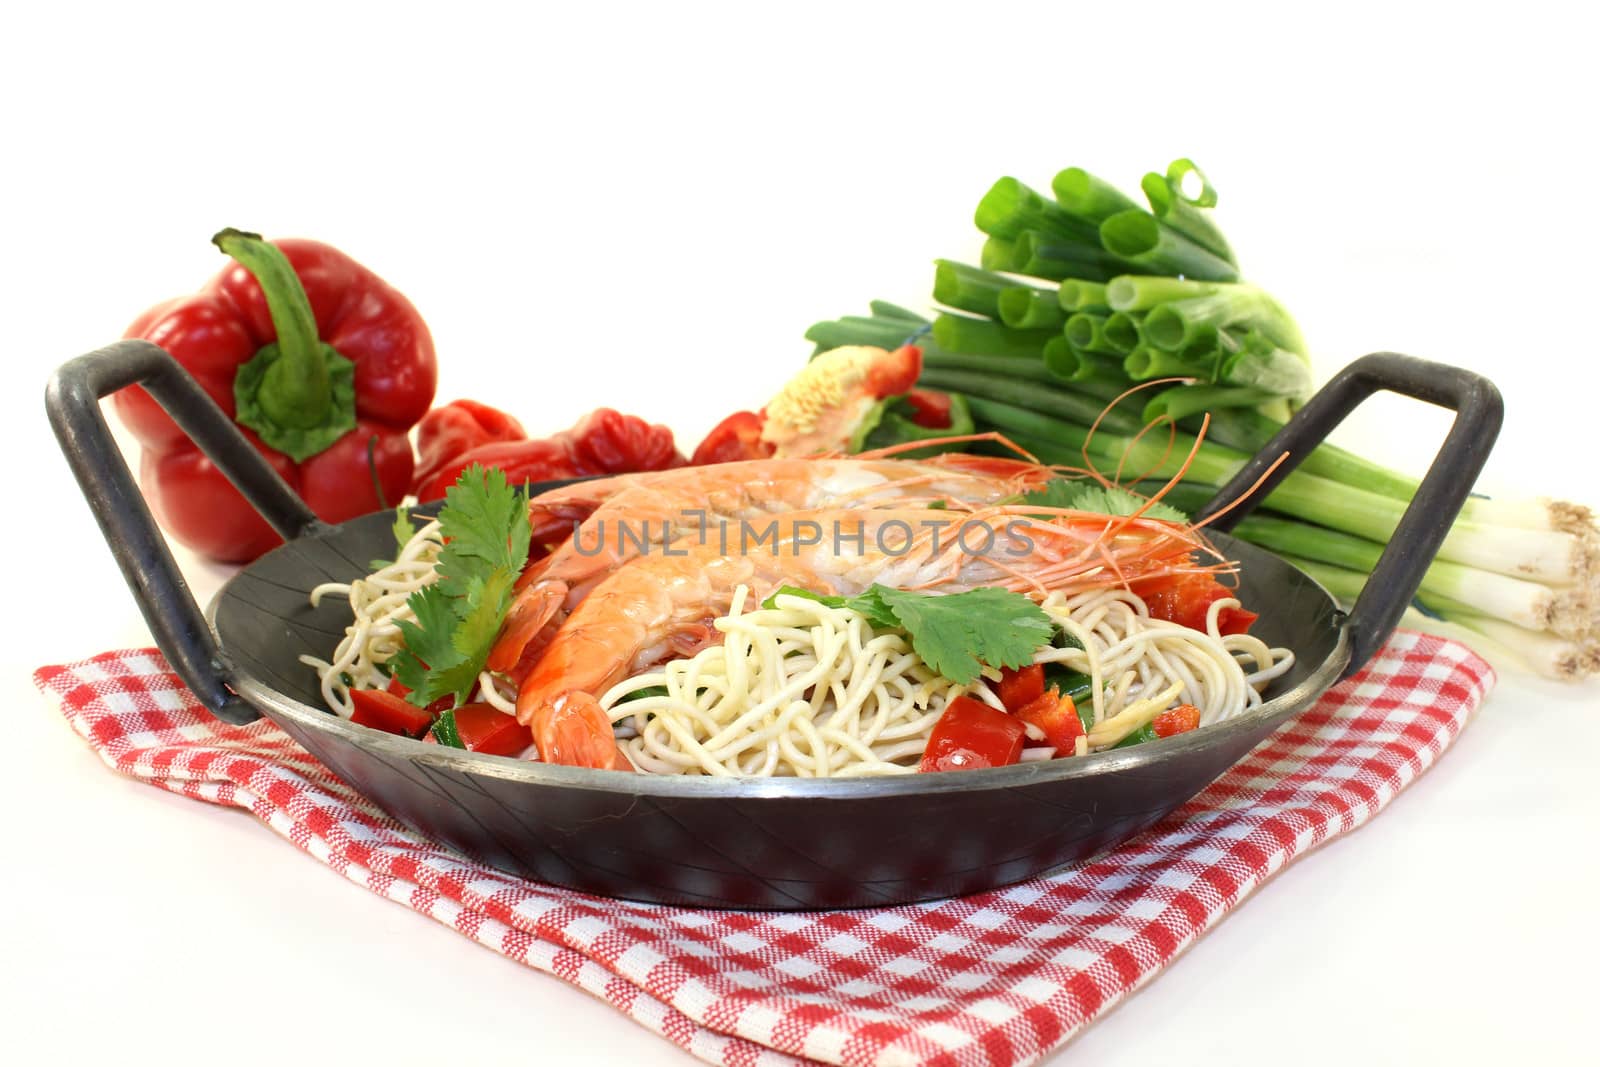 Black tiger prawns on Mie noodles with vegetables